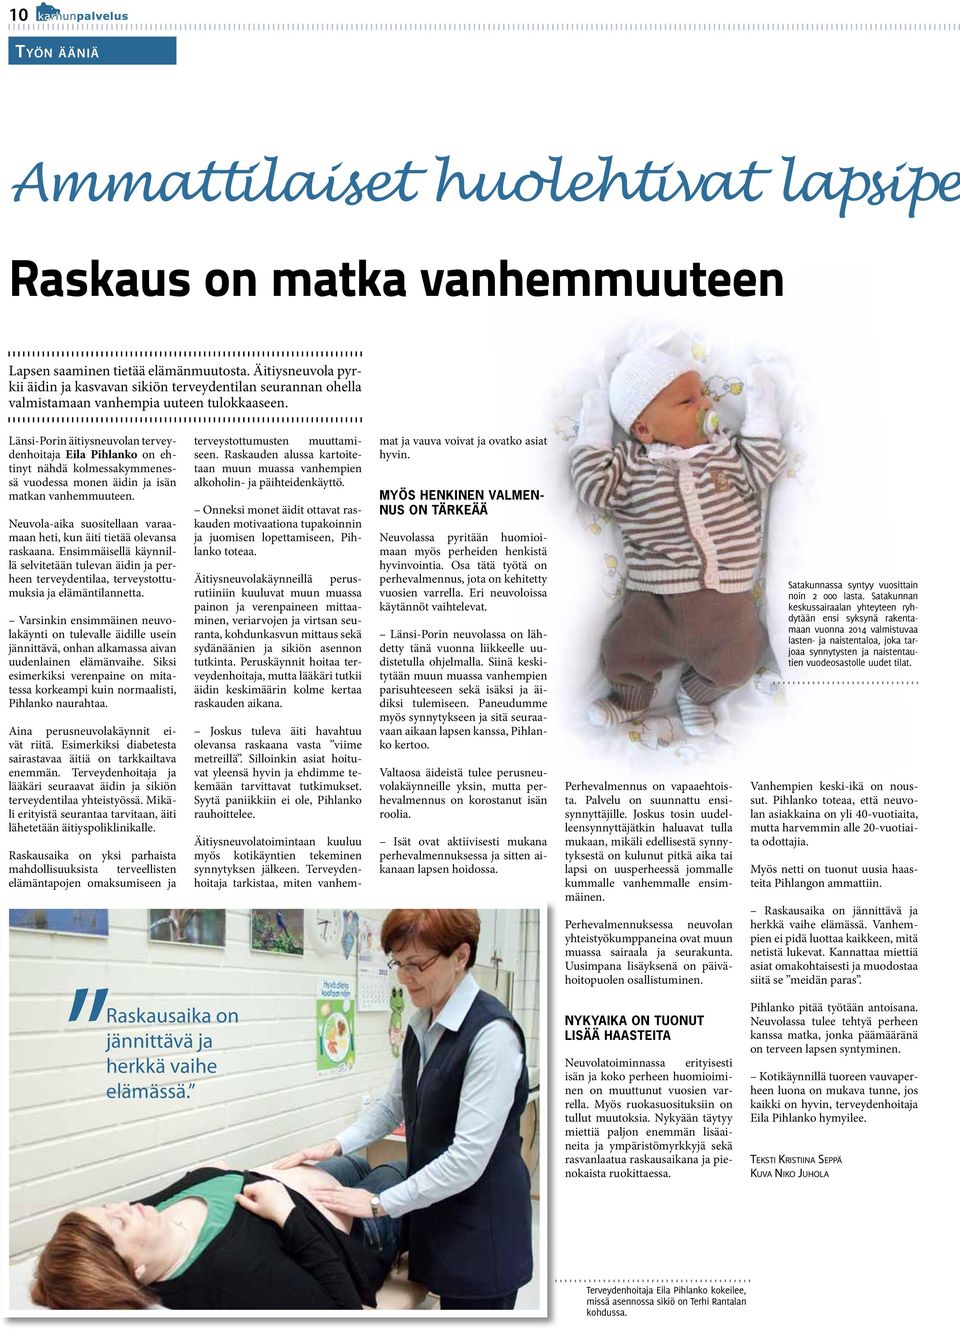 Länsi-Porin äitiysneuvolan terveydenhoitaja Eila Pihlanko on ehtinyt nähdä kolmessakymmenessä vuodessa monen äidin ja isän matkan vanhemmuuteen.